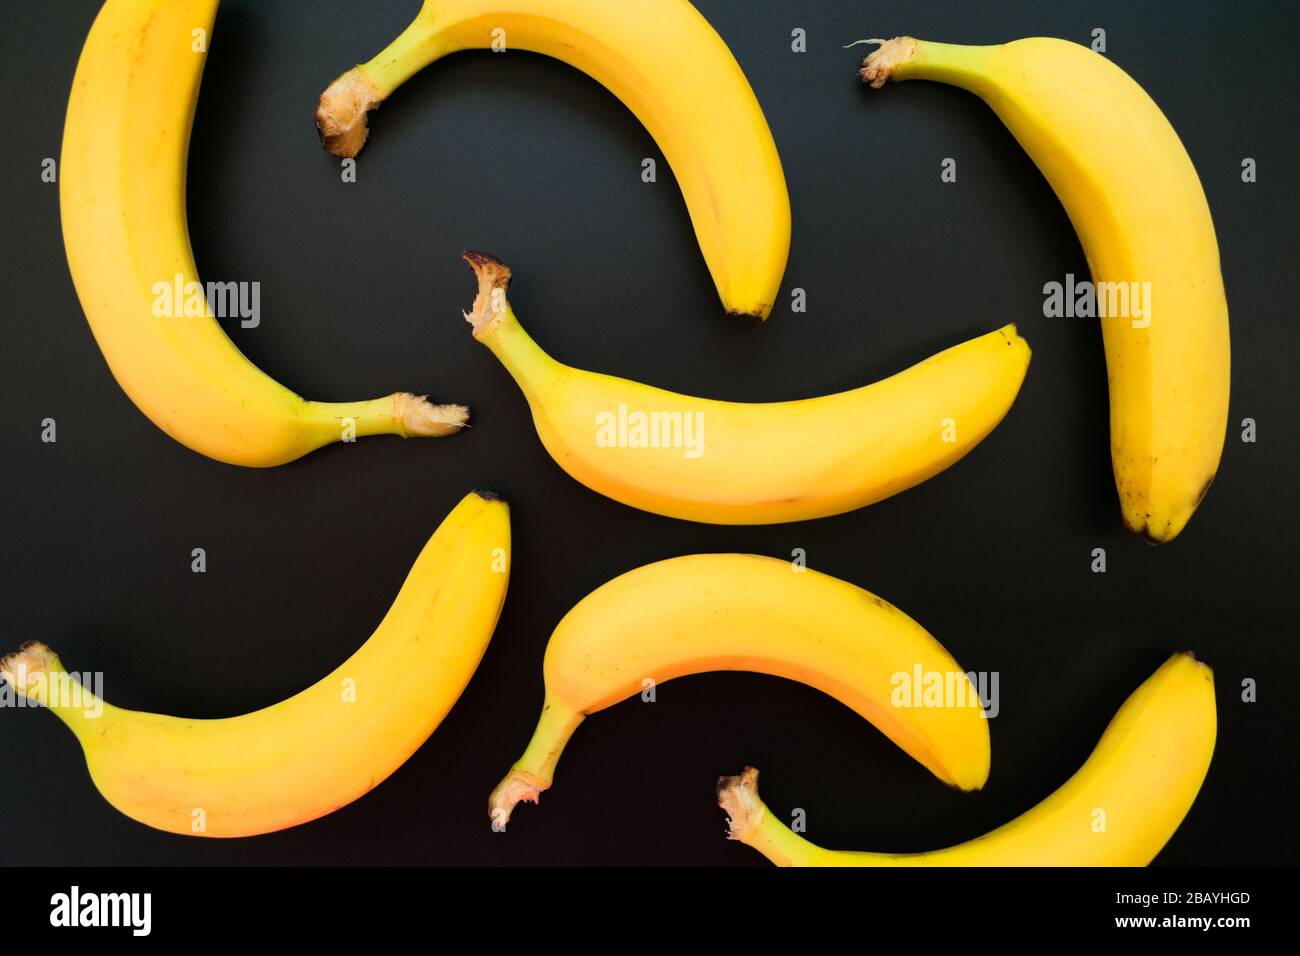 Hintergrund gelber Bananen auf schwarzem Grund. Stockfoto